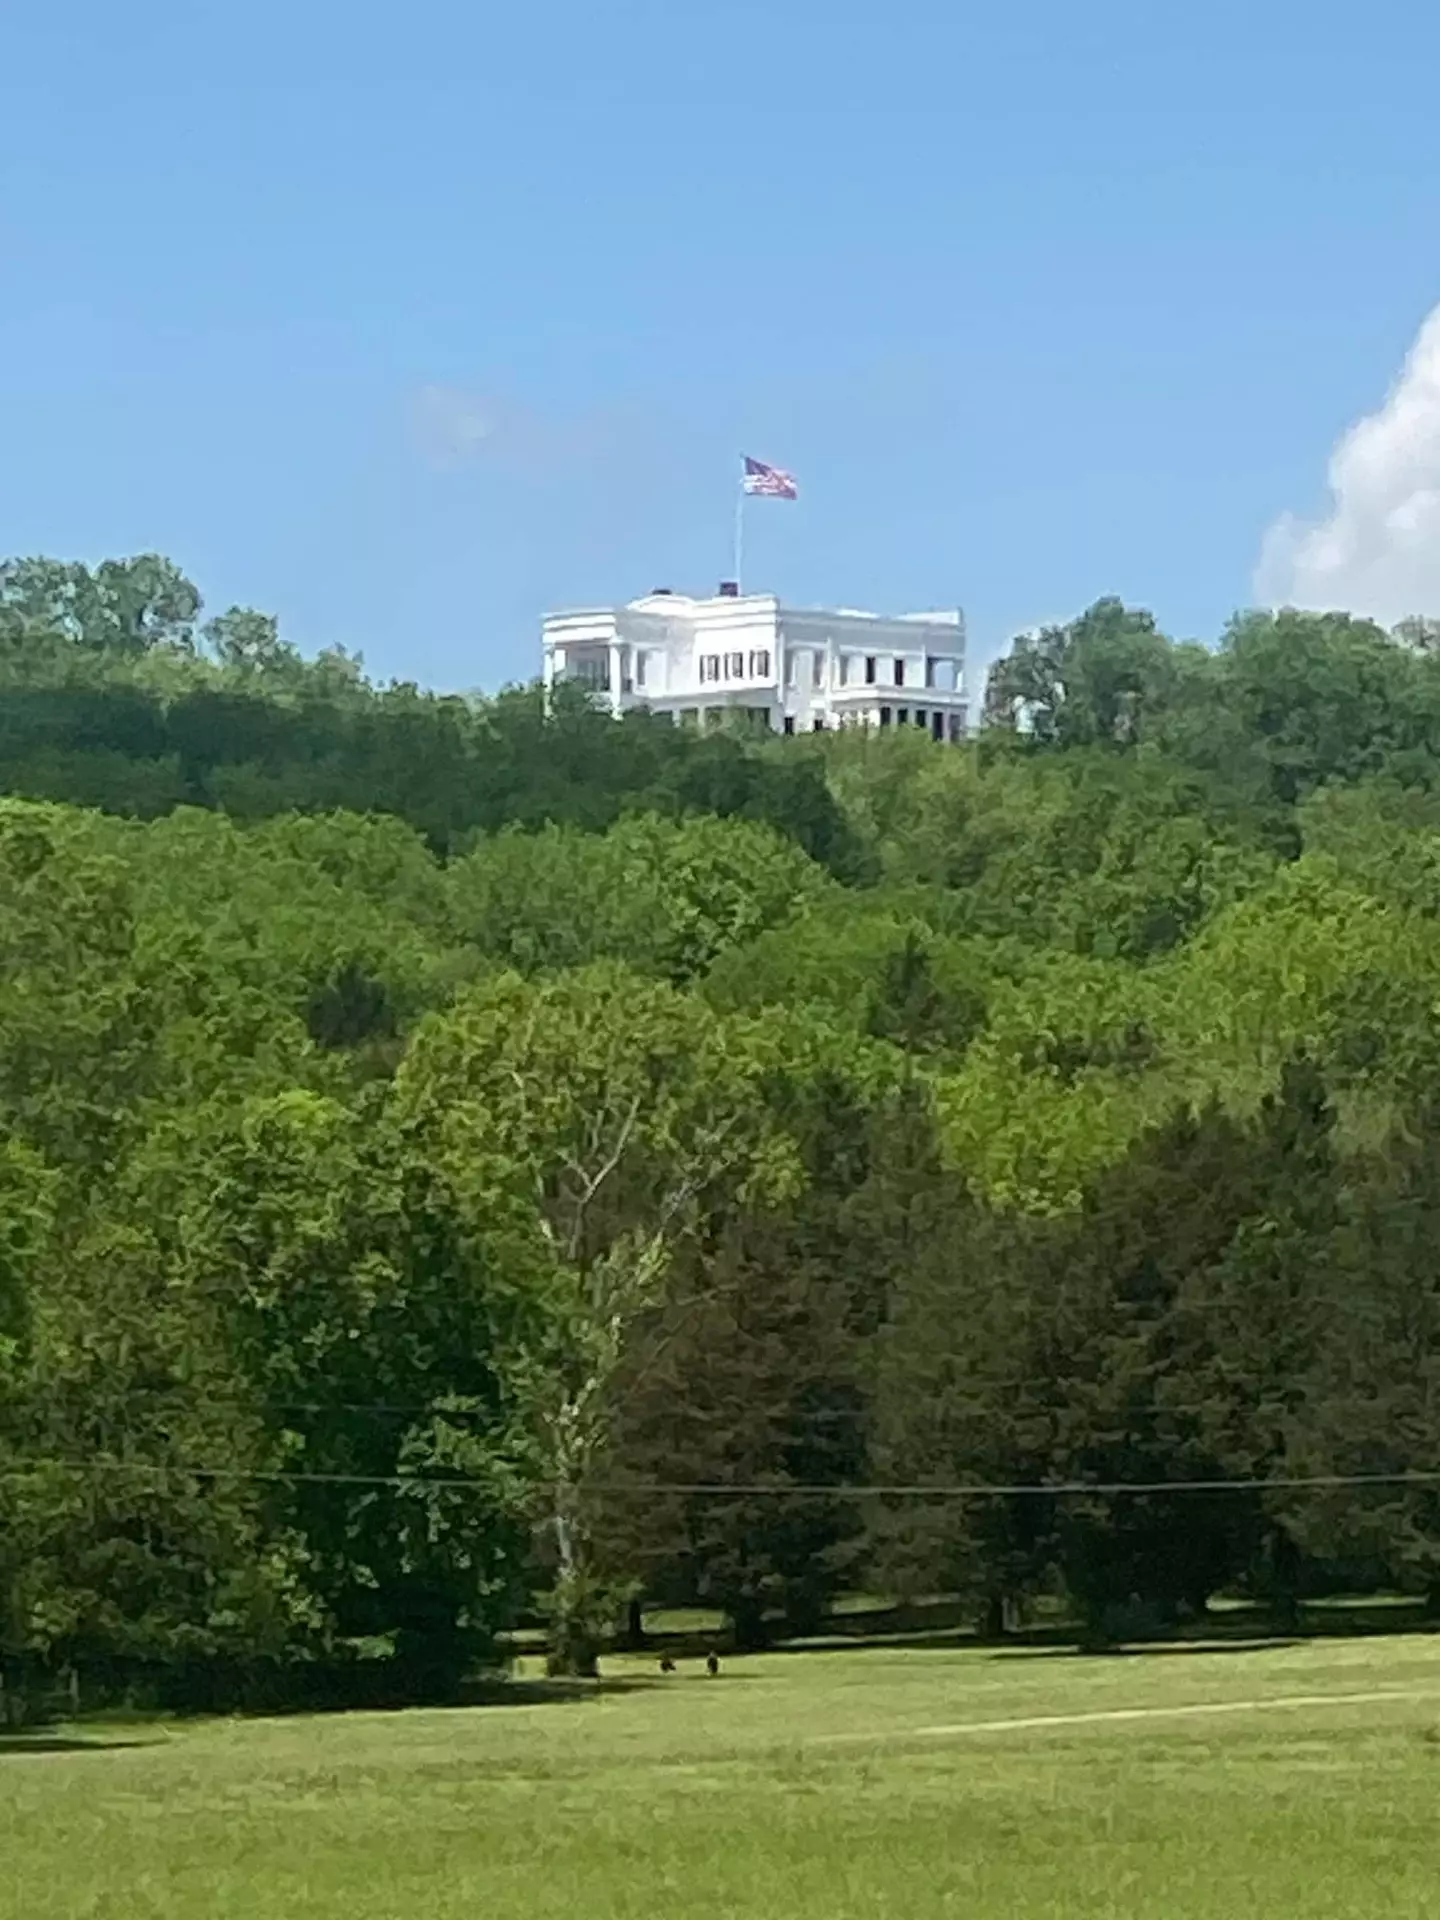 Kid Rock's replica White House.